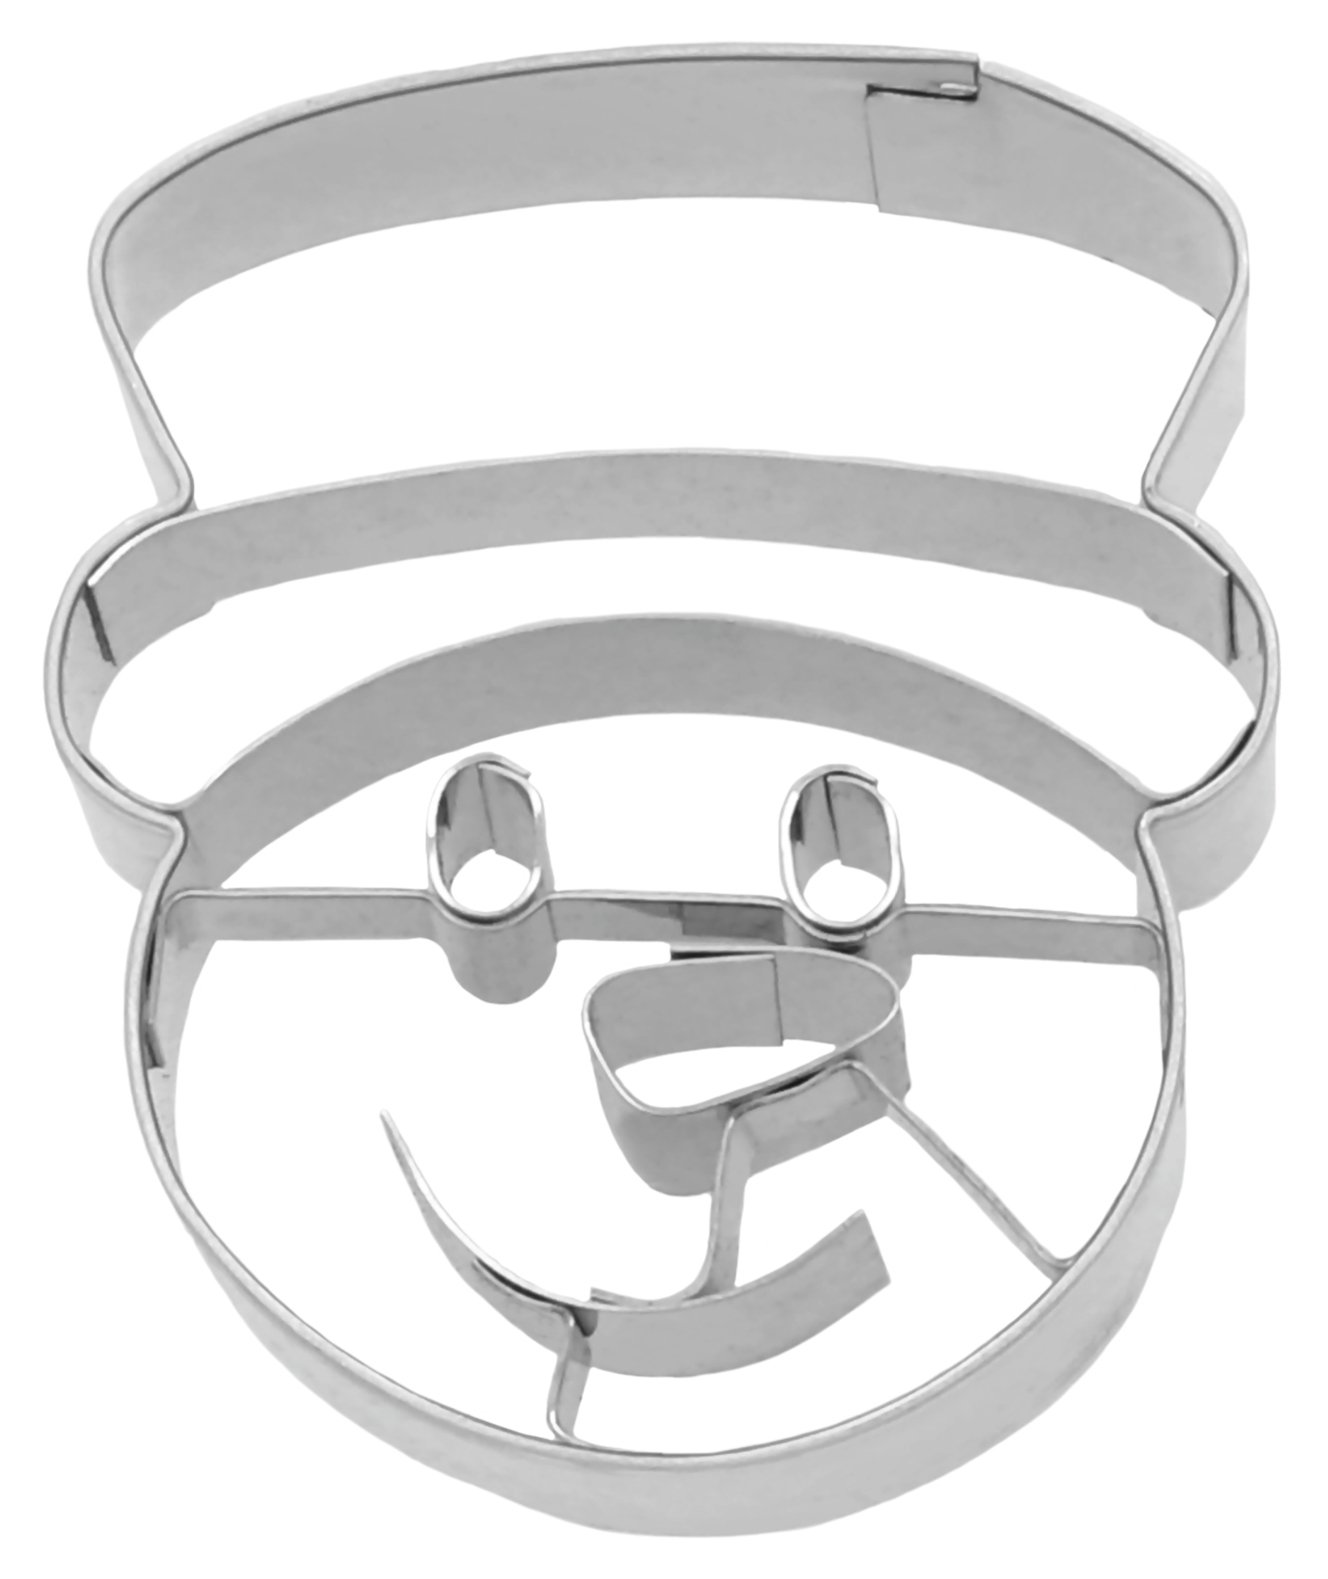 Ausstechform Schneemann mit Hut | Schneemann Kopf mit Innenprägung 6 cm, Edelstahl rostfrei